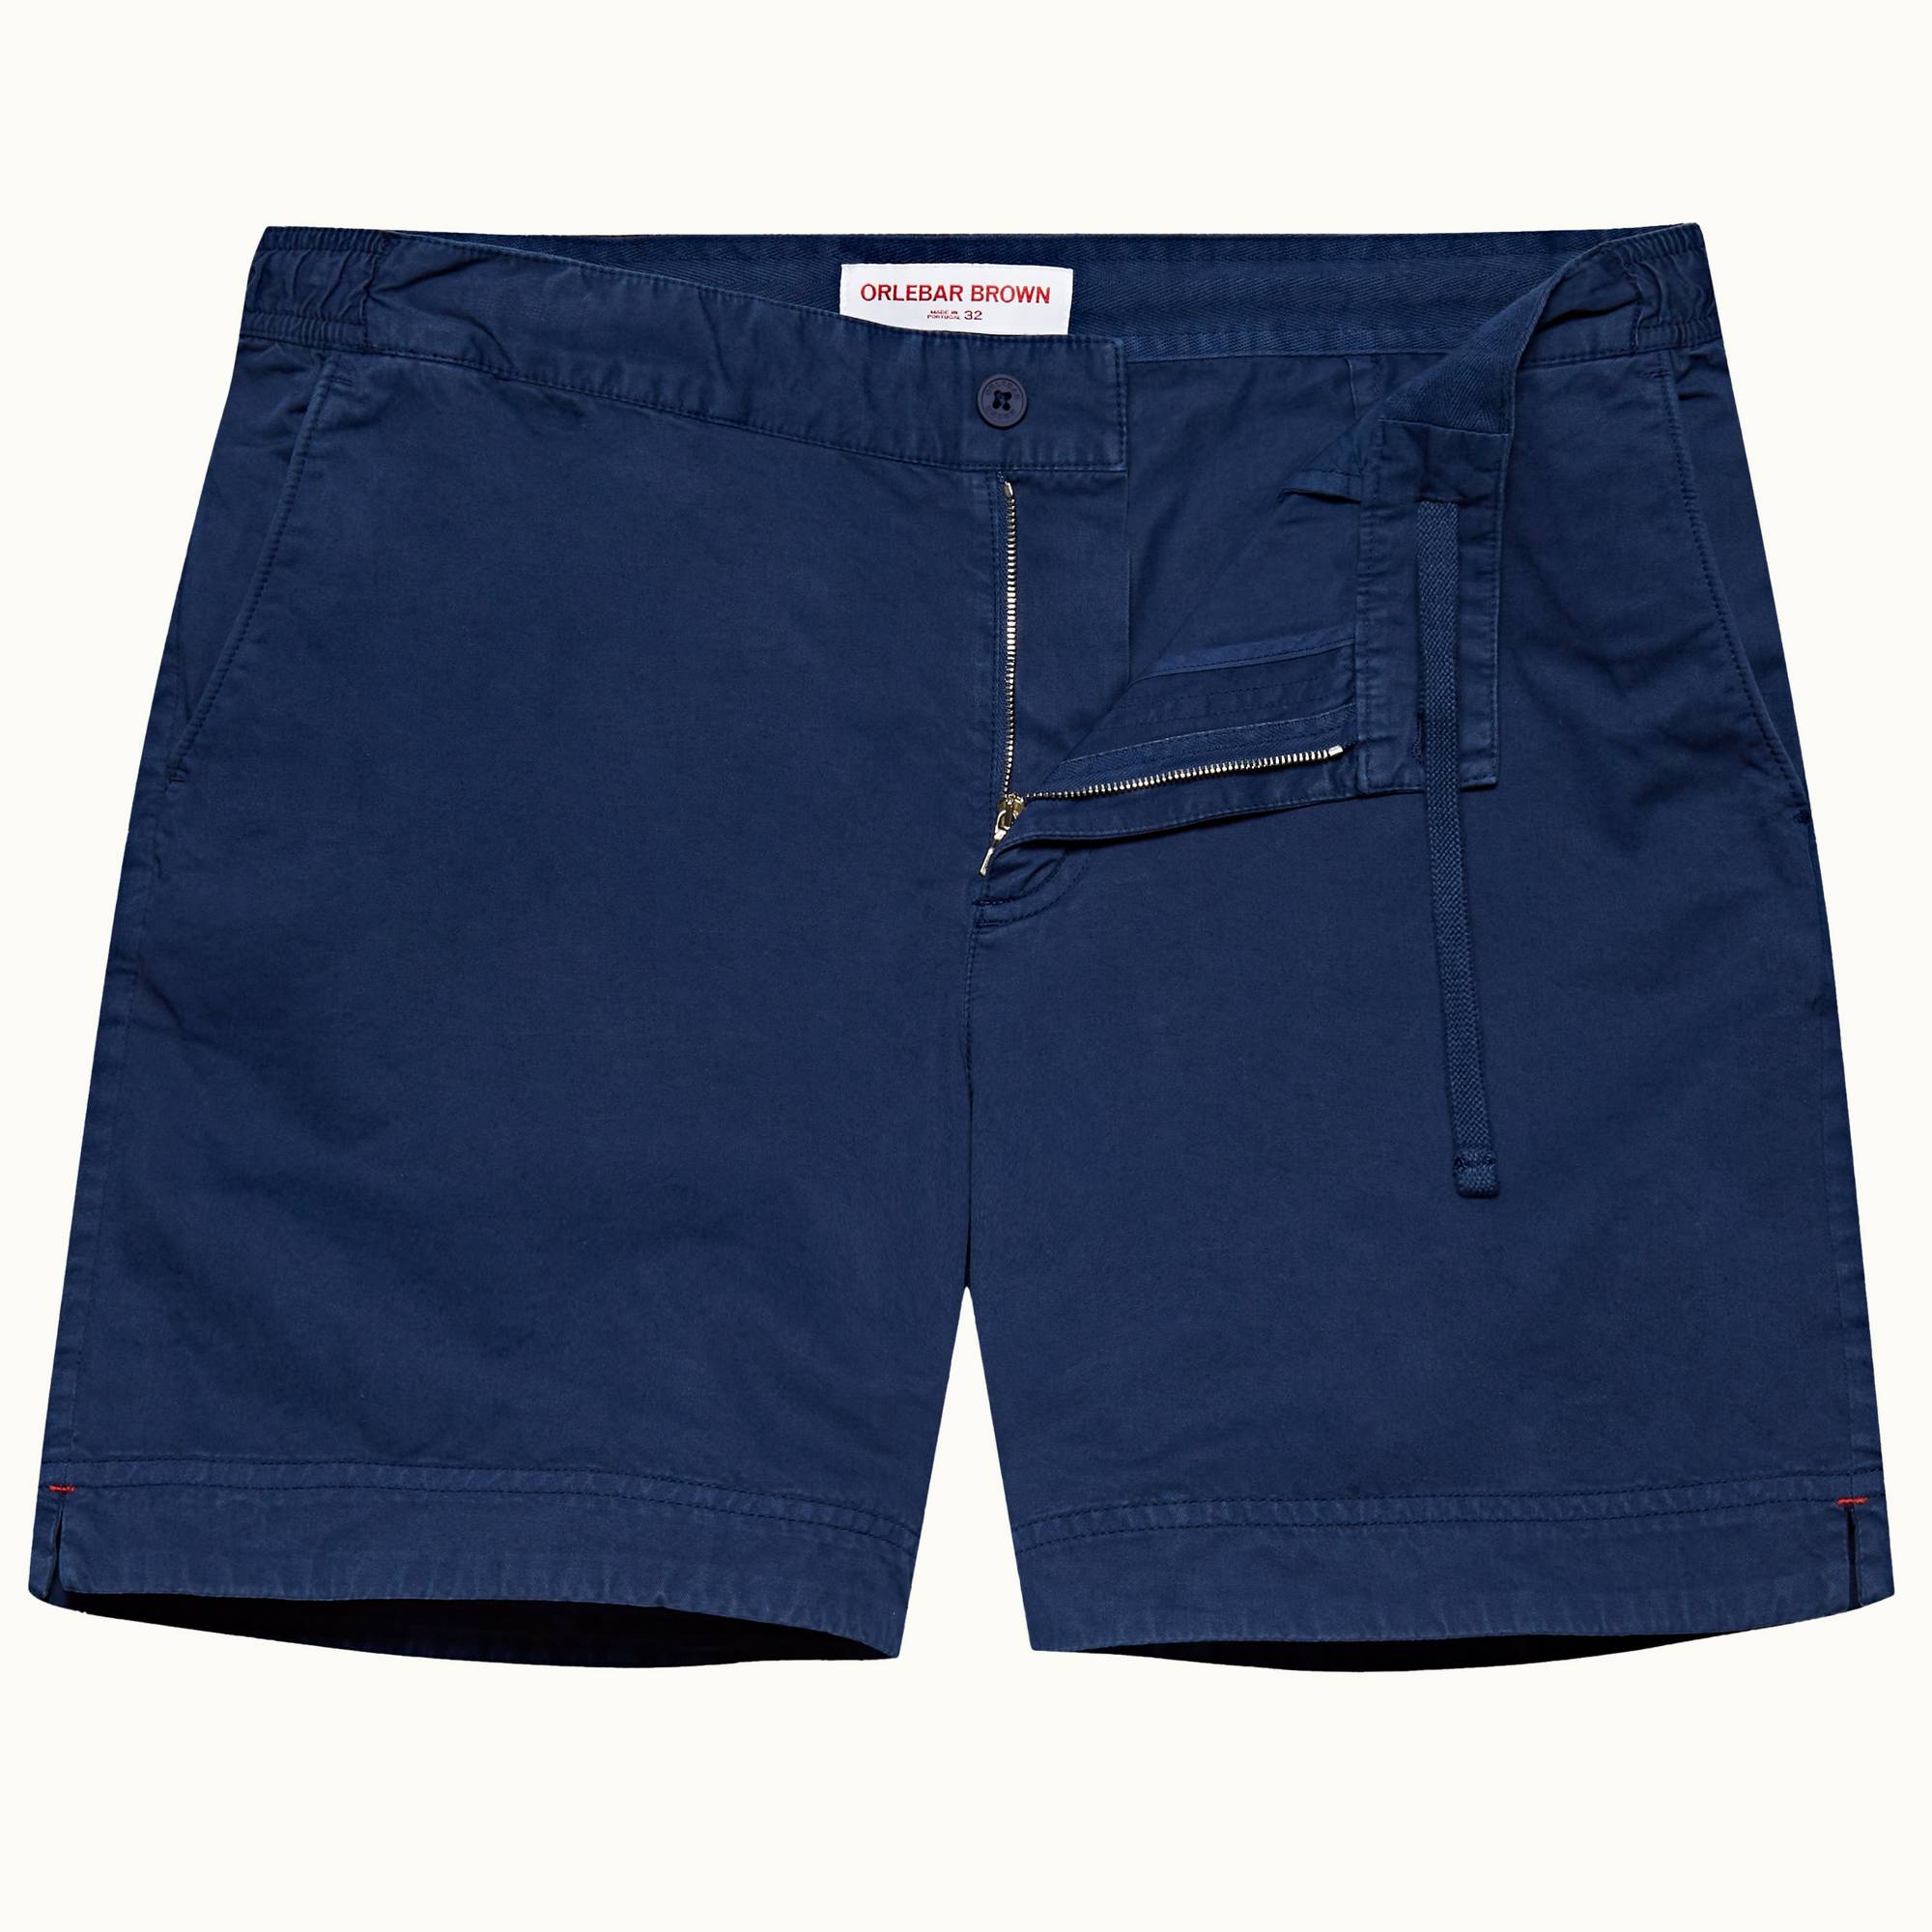 Pantalones cortos Bulldog de lino Orlebar Brown de Algodón de color Azul para hombre Hombre Ropa de Pantalones cortos 